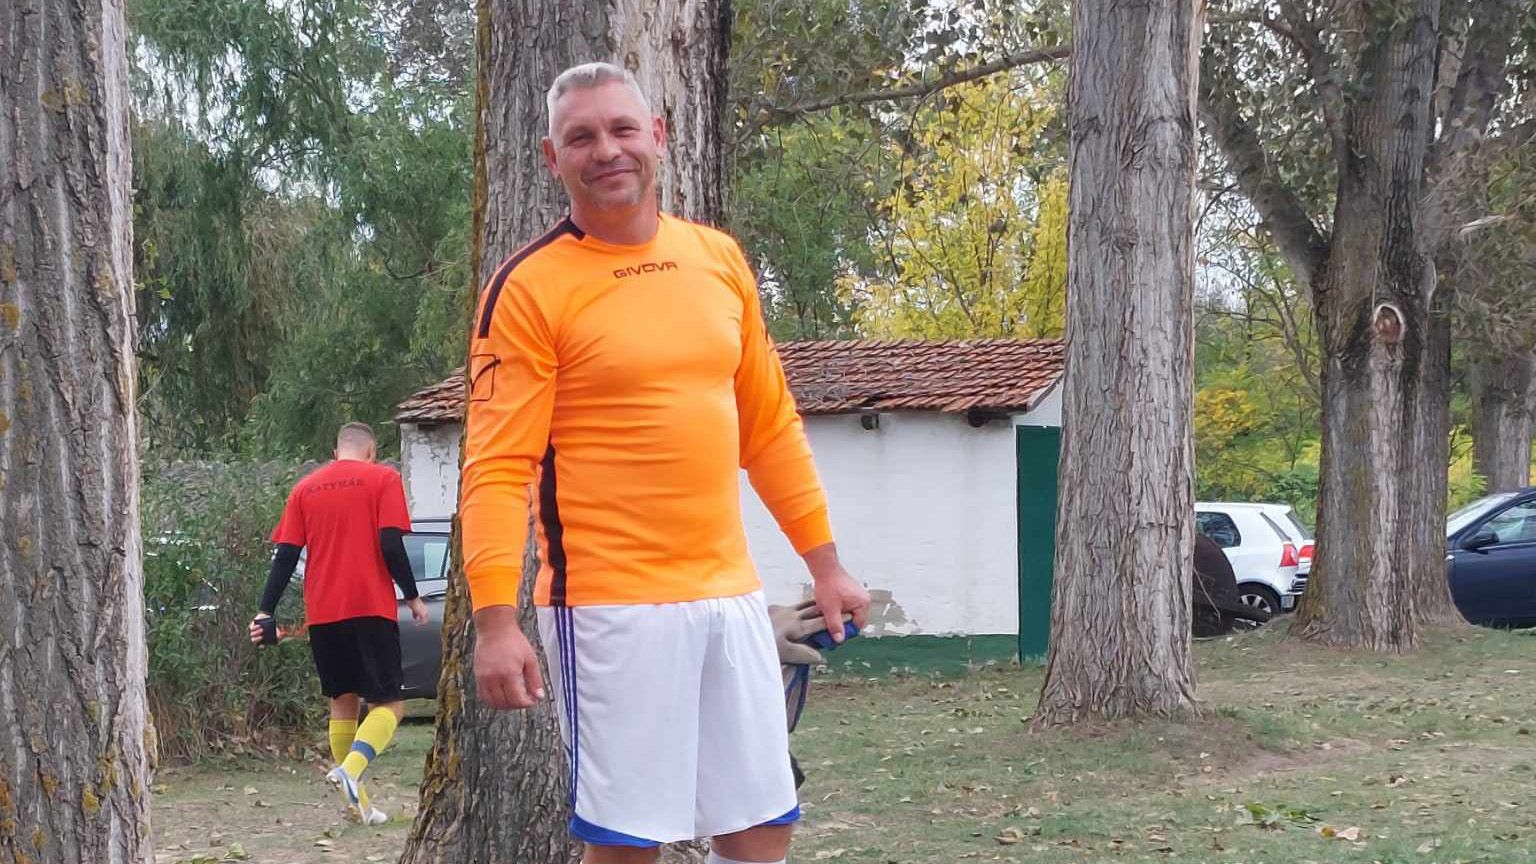 Kiderítettük, miért kapott 25 éves eltiltást a magyar futballista – megszólalt a játékos